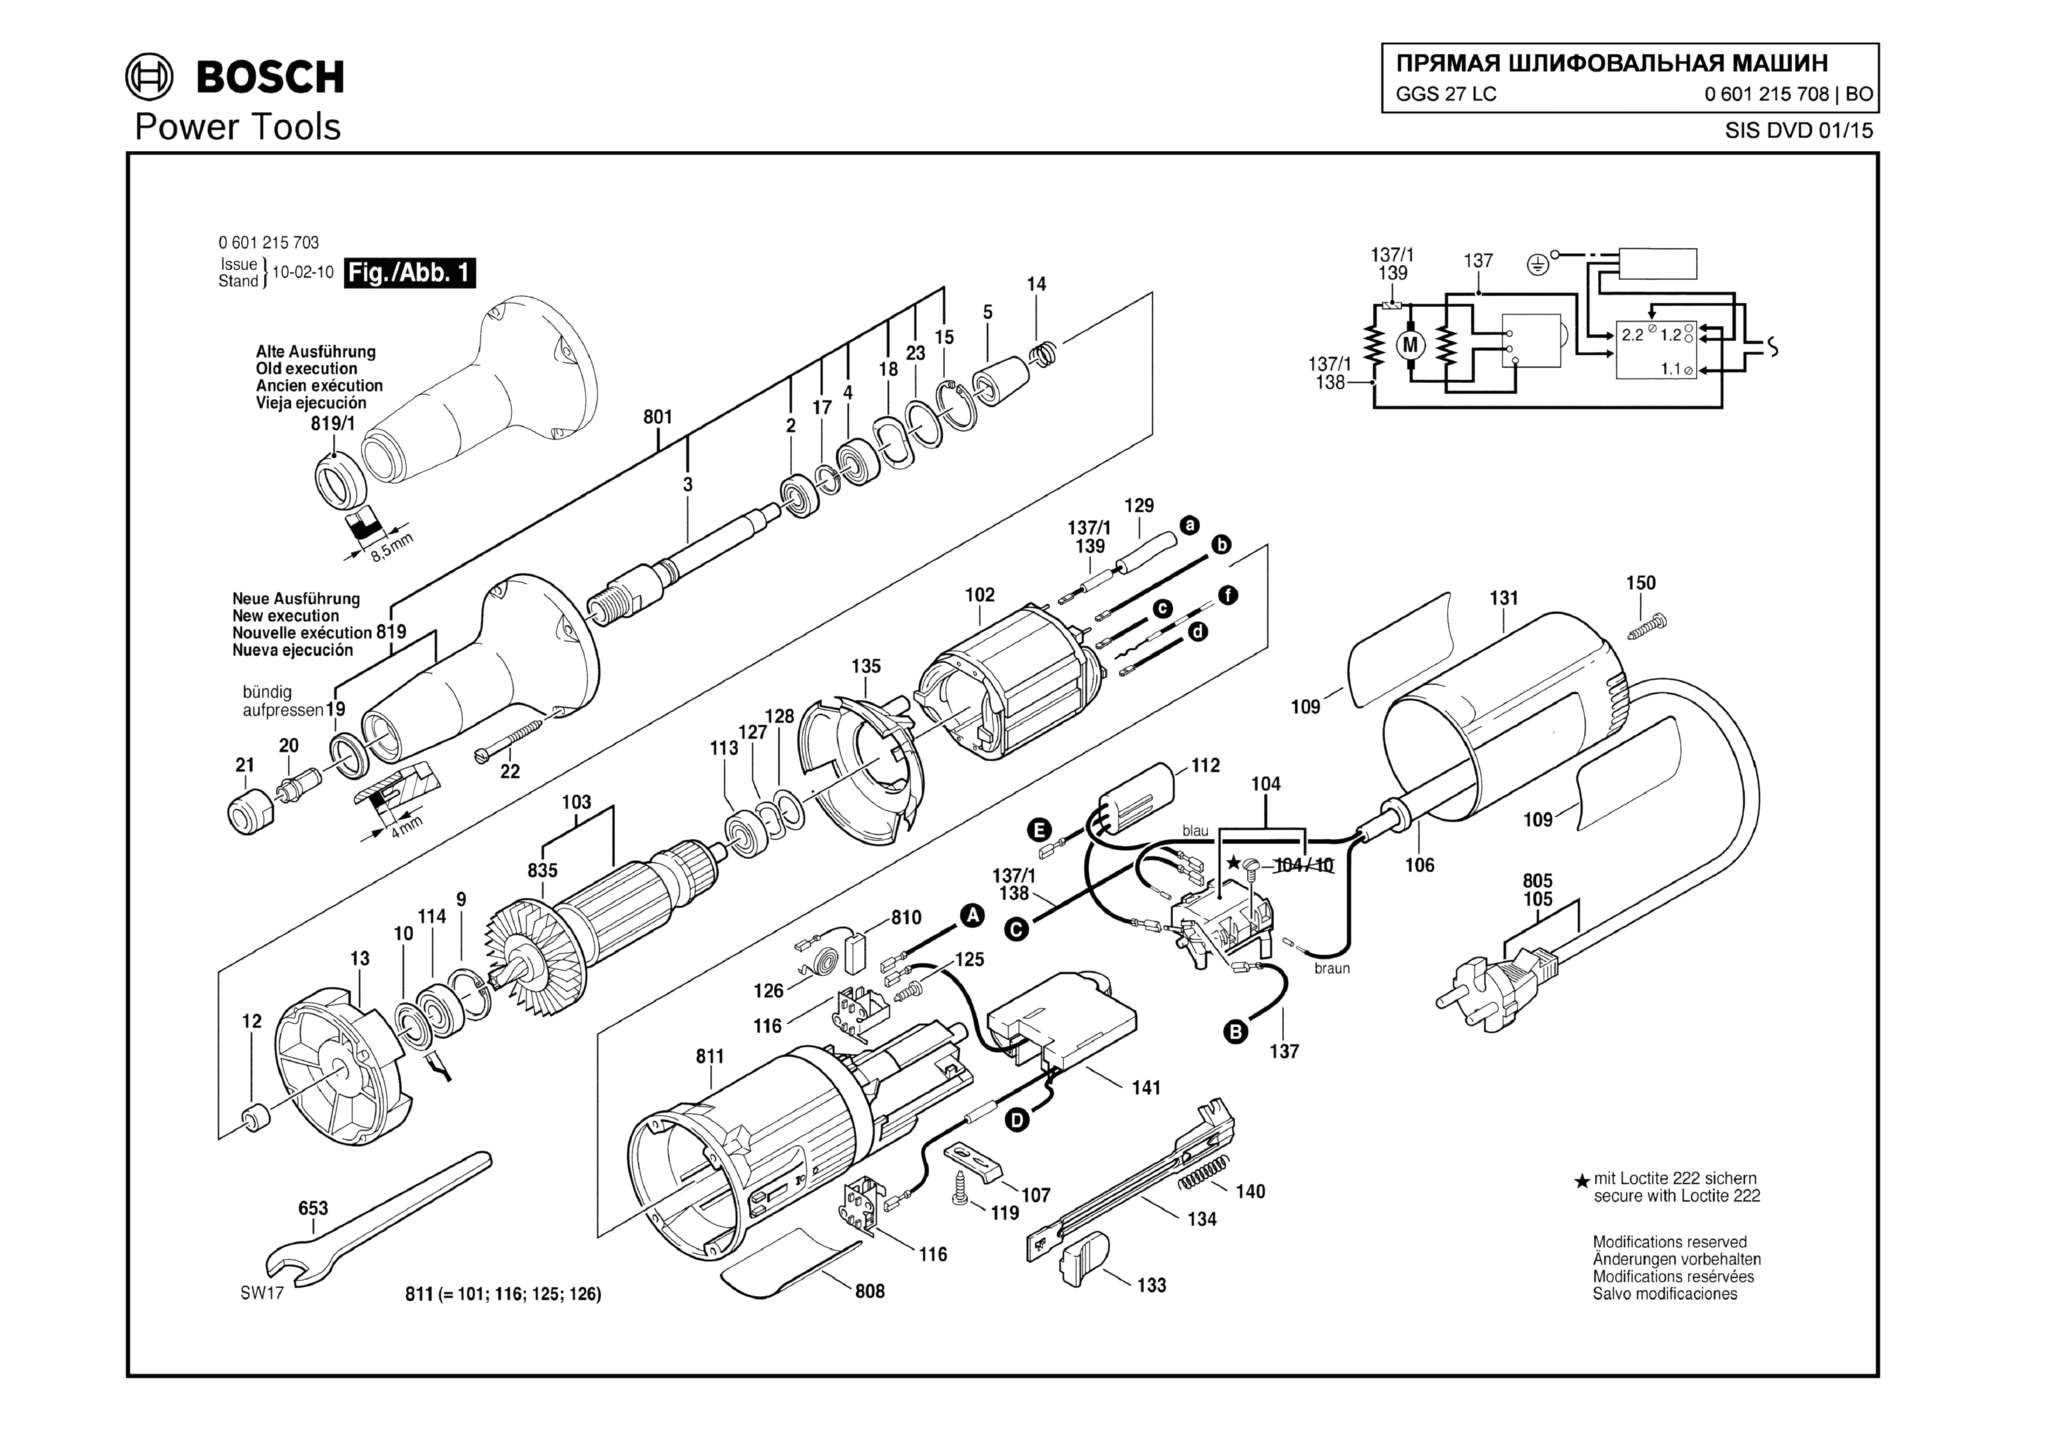 Запчасти, схема и деталировка Bosch GGS 27 LC (ТИП 0601215708)